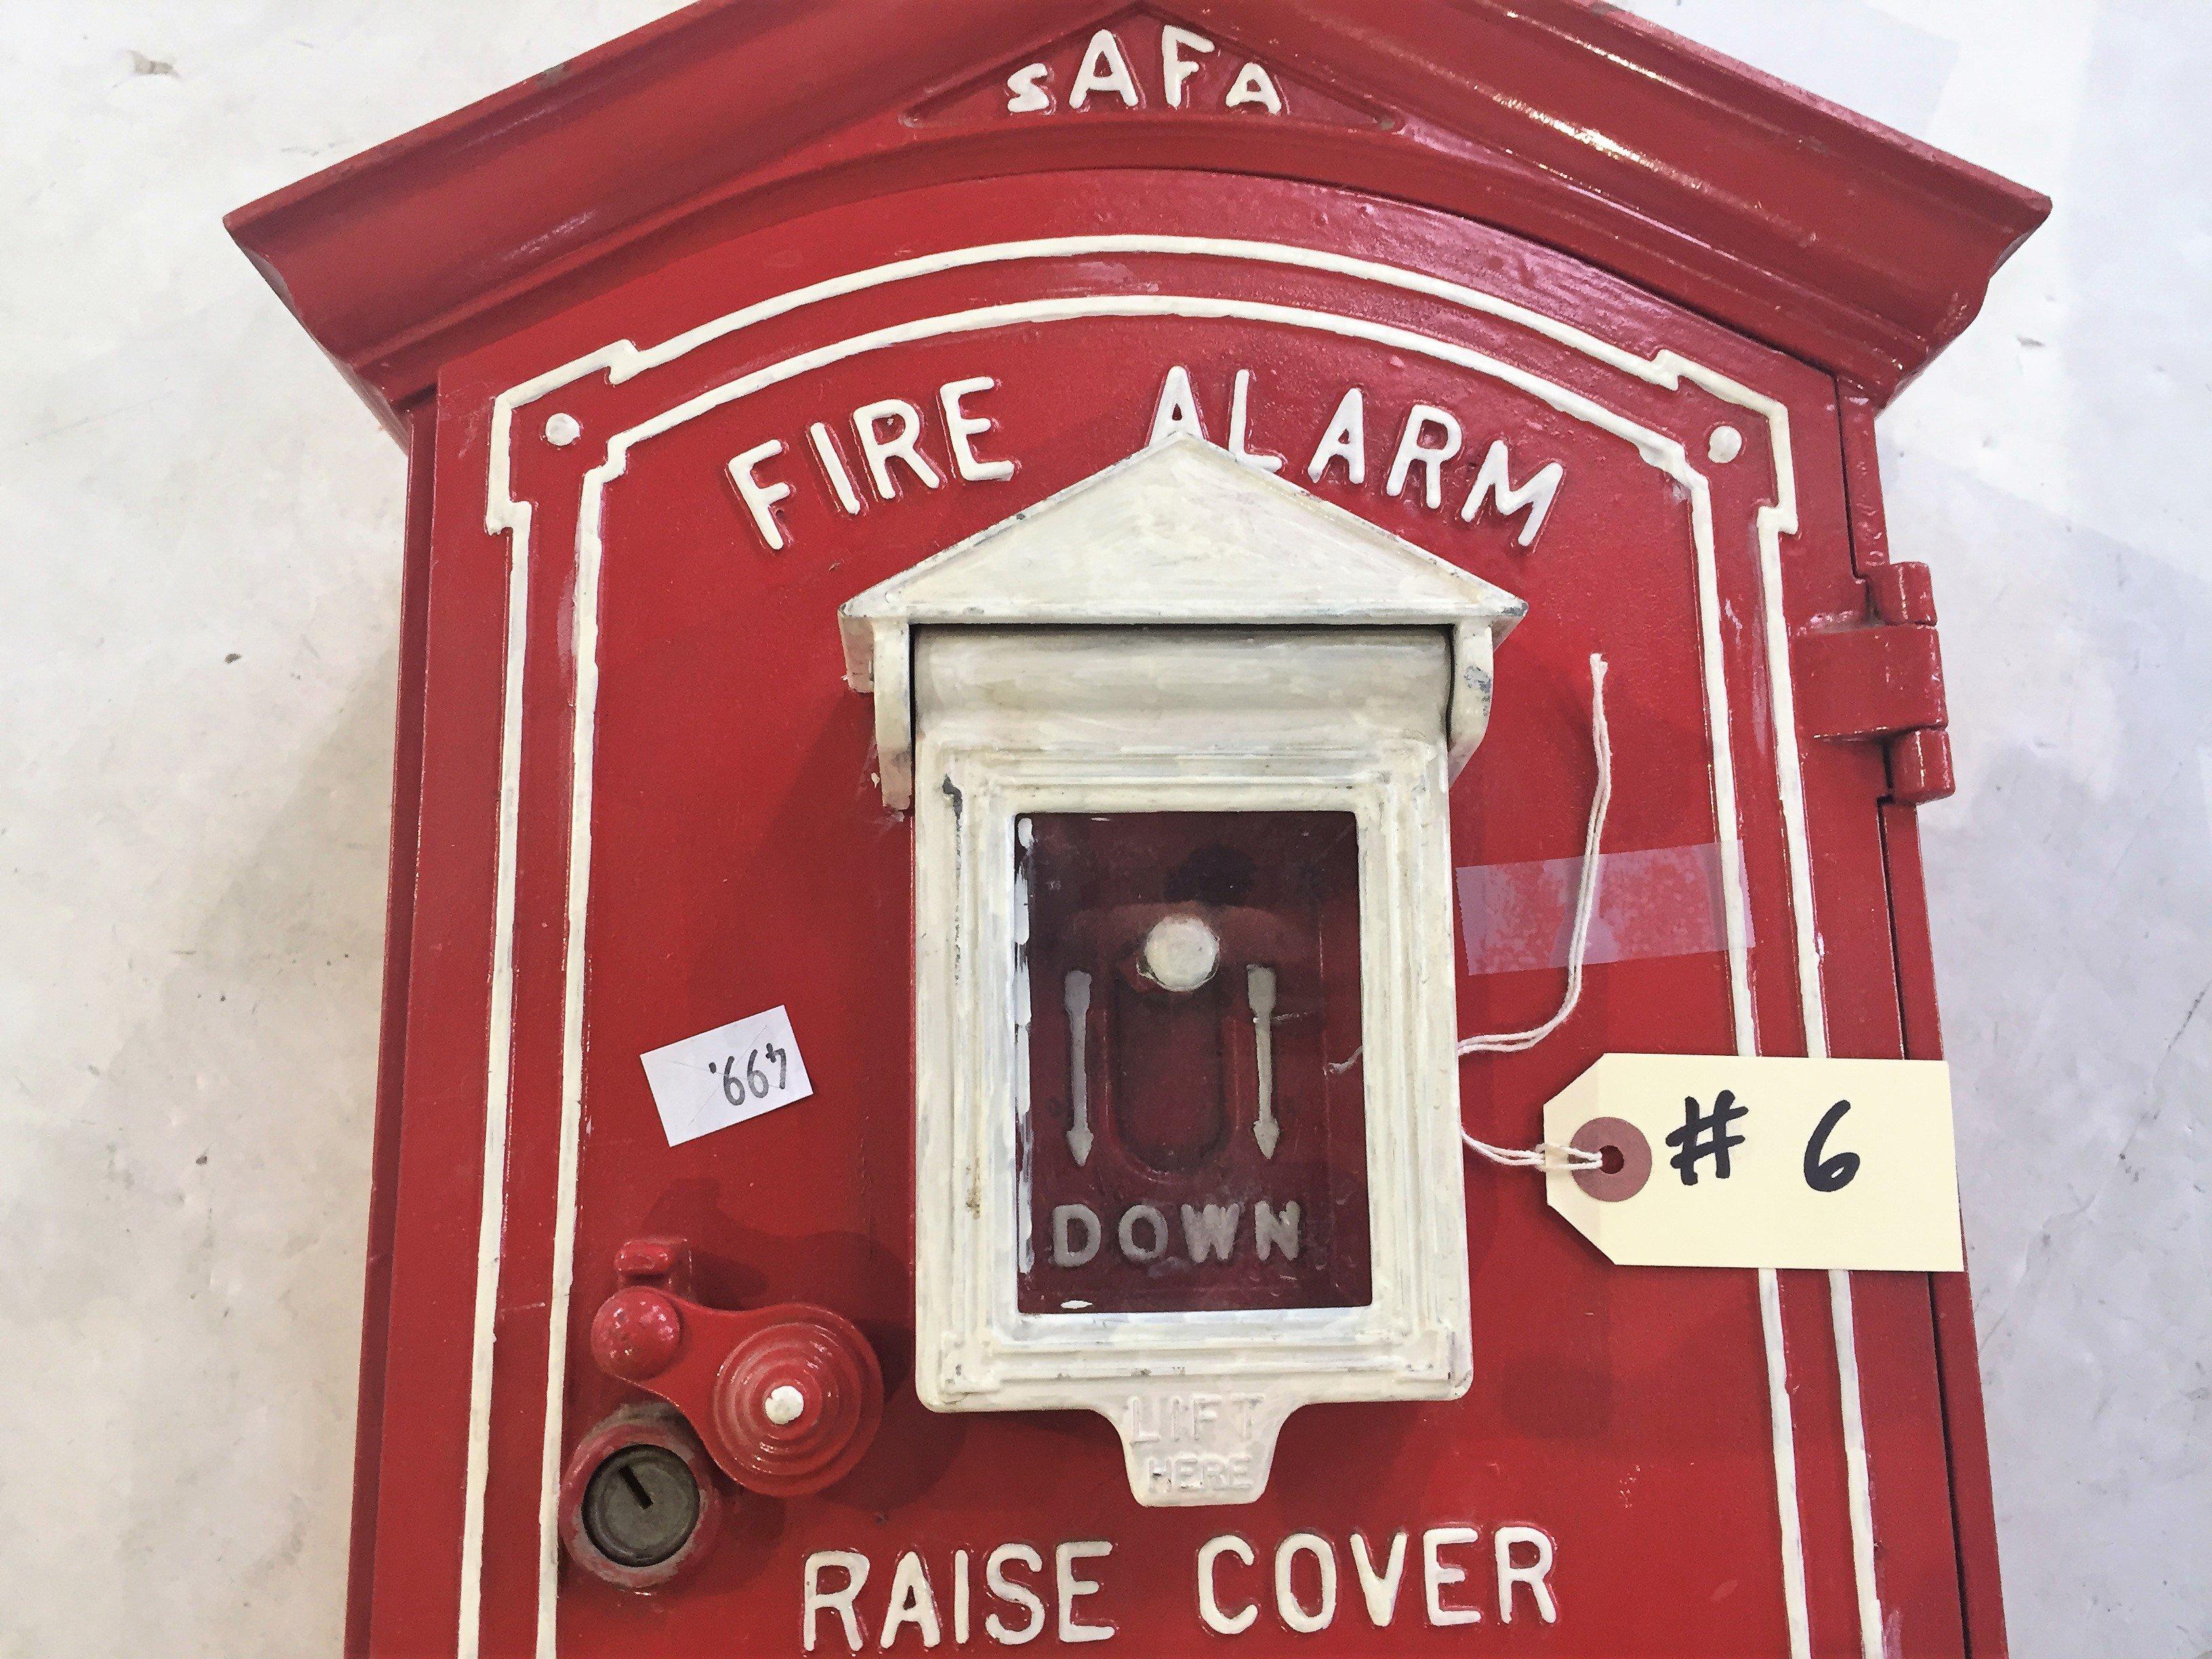 "Superior Fire Alarm"